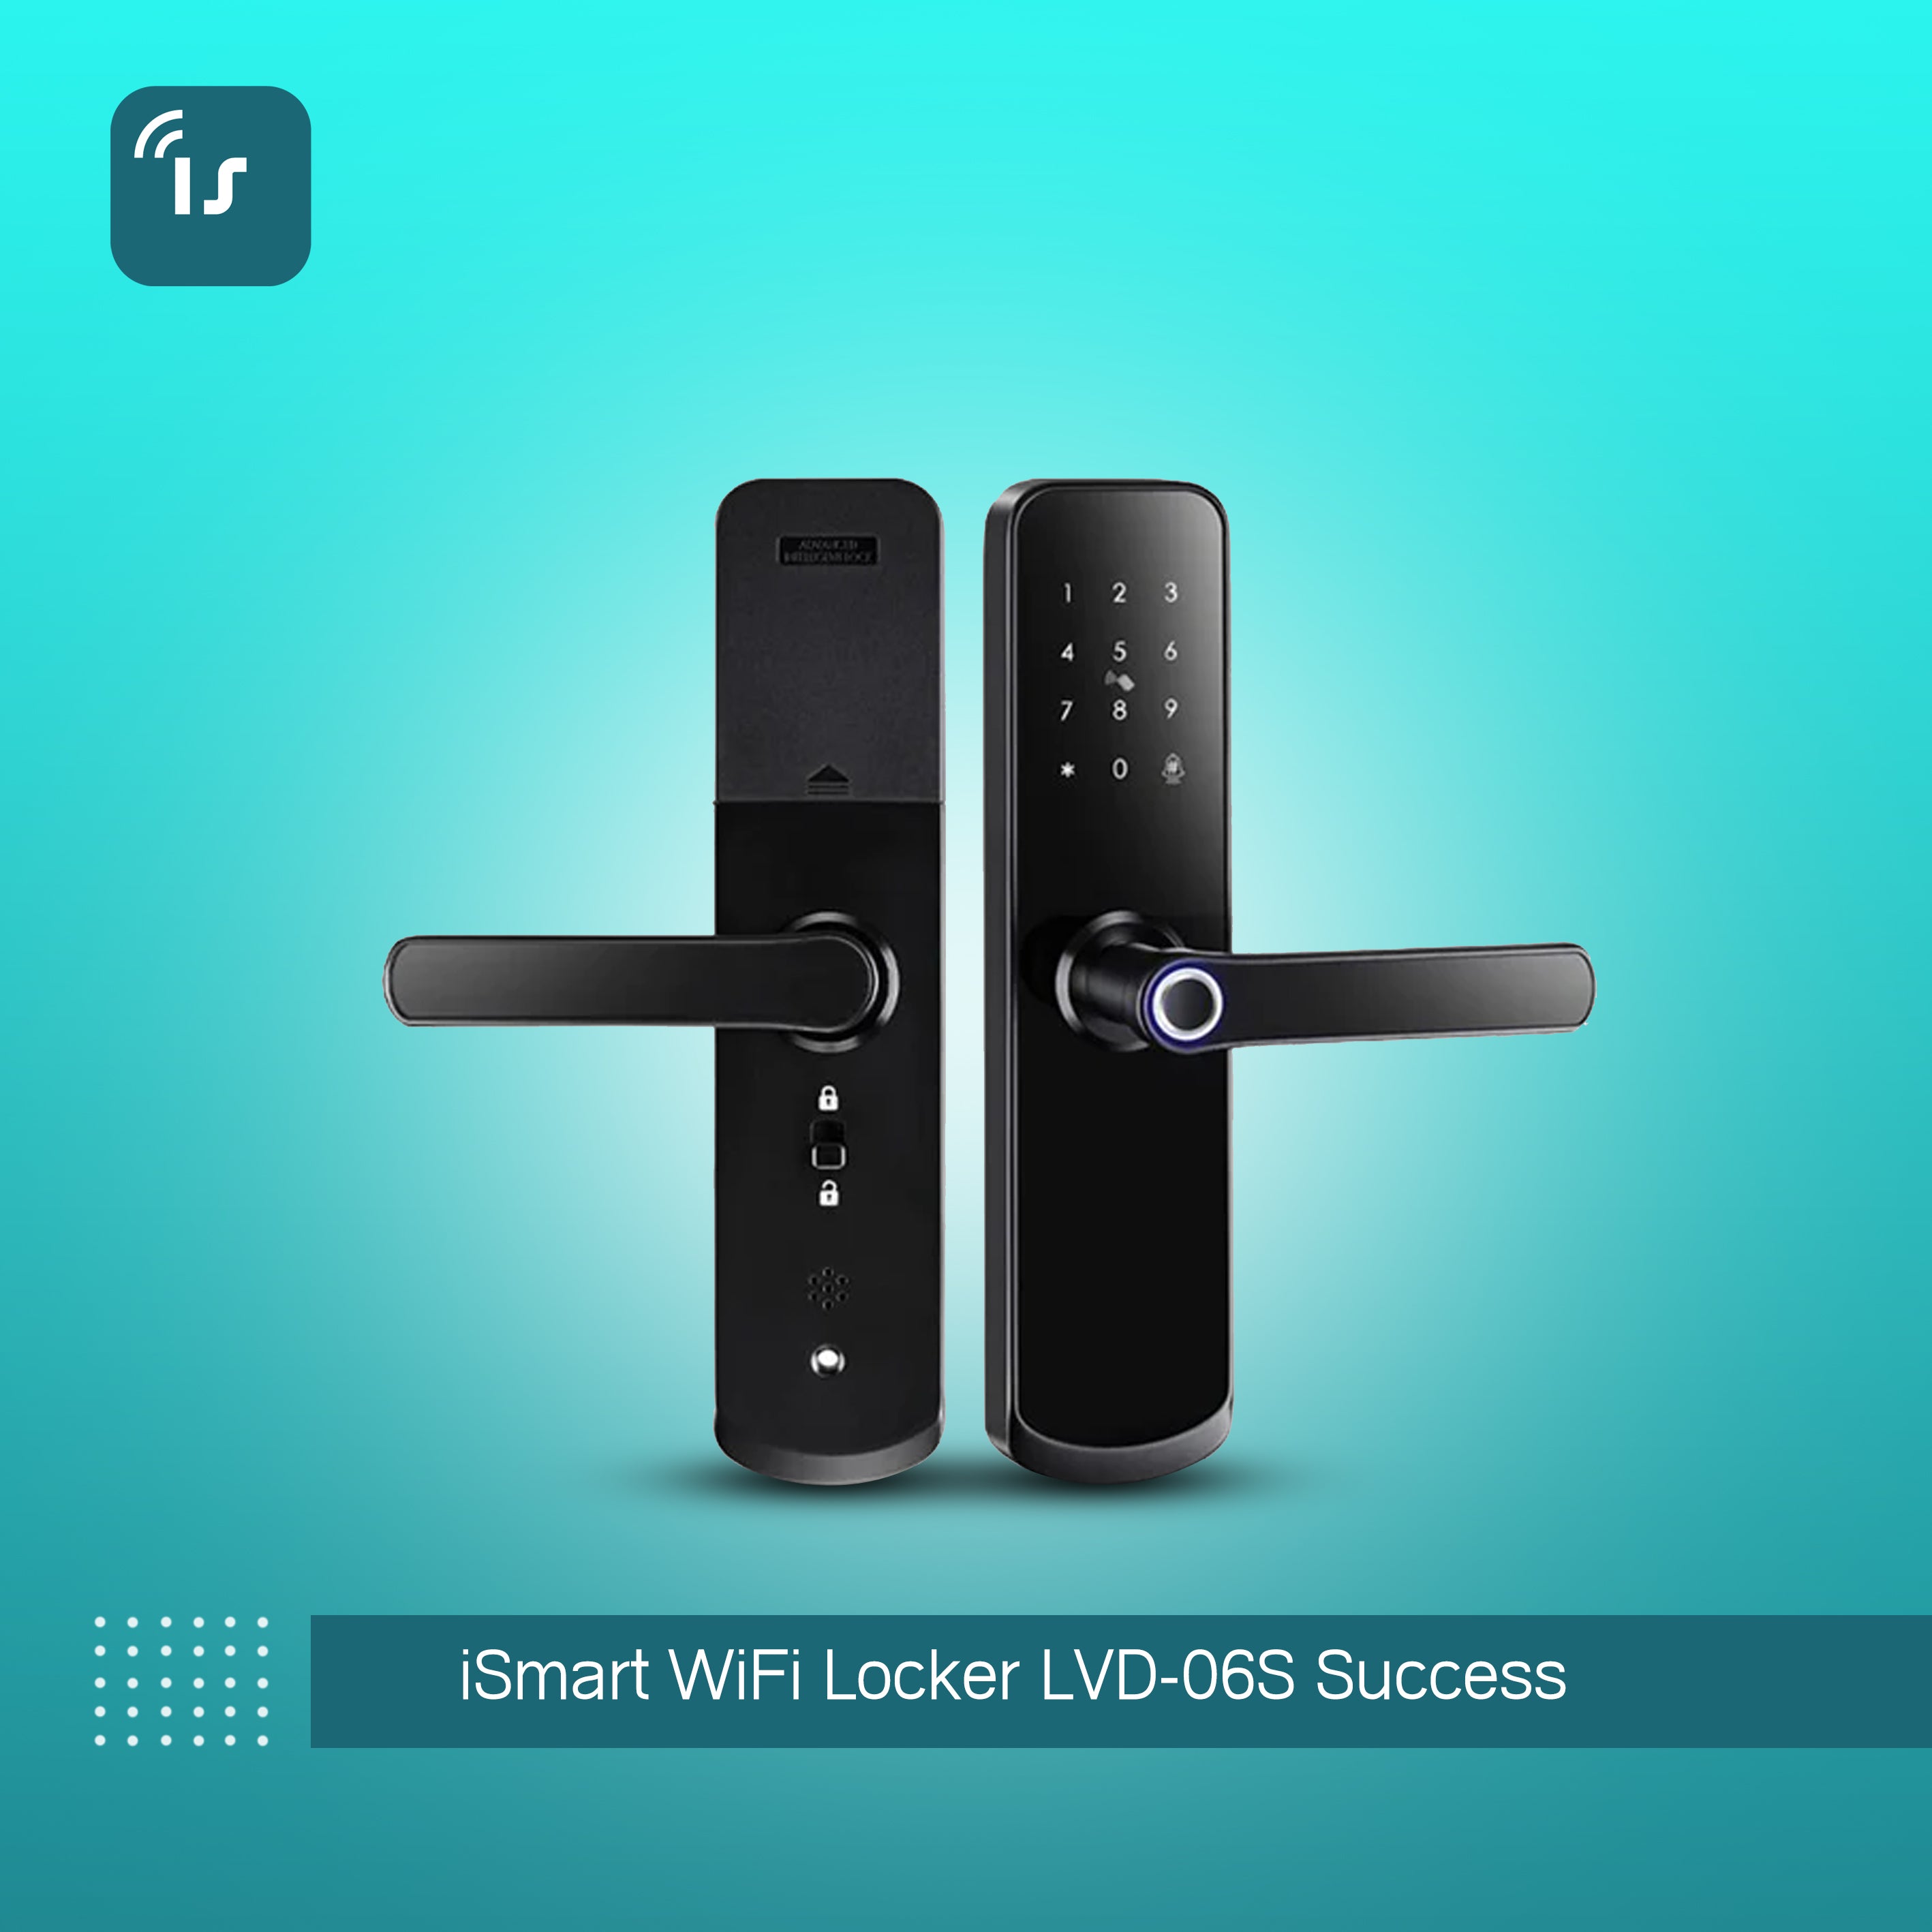 iSmart WiFi Locker LVD-06S